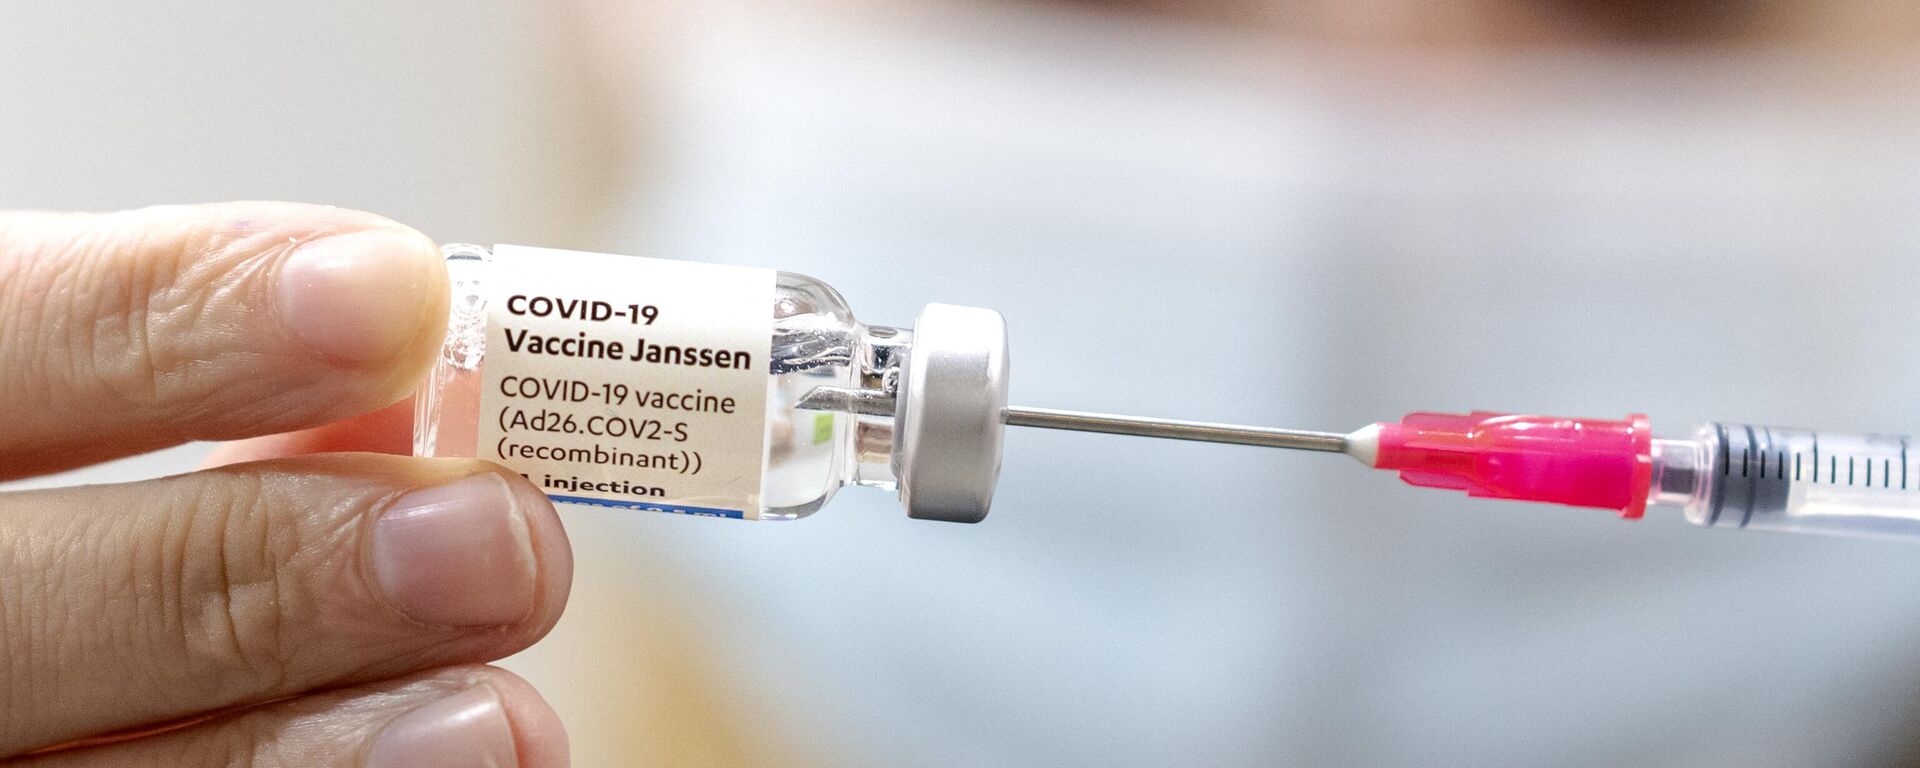 Janssen vakcina - Sputnik Lietuva, 1920, 03.08.2021